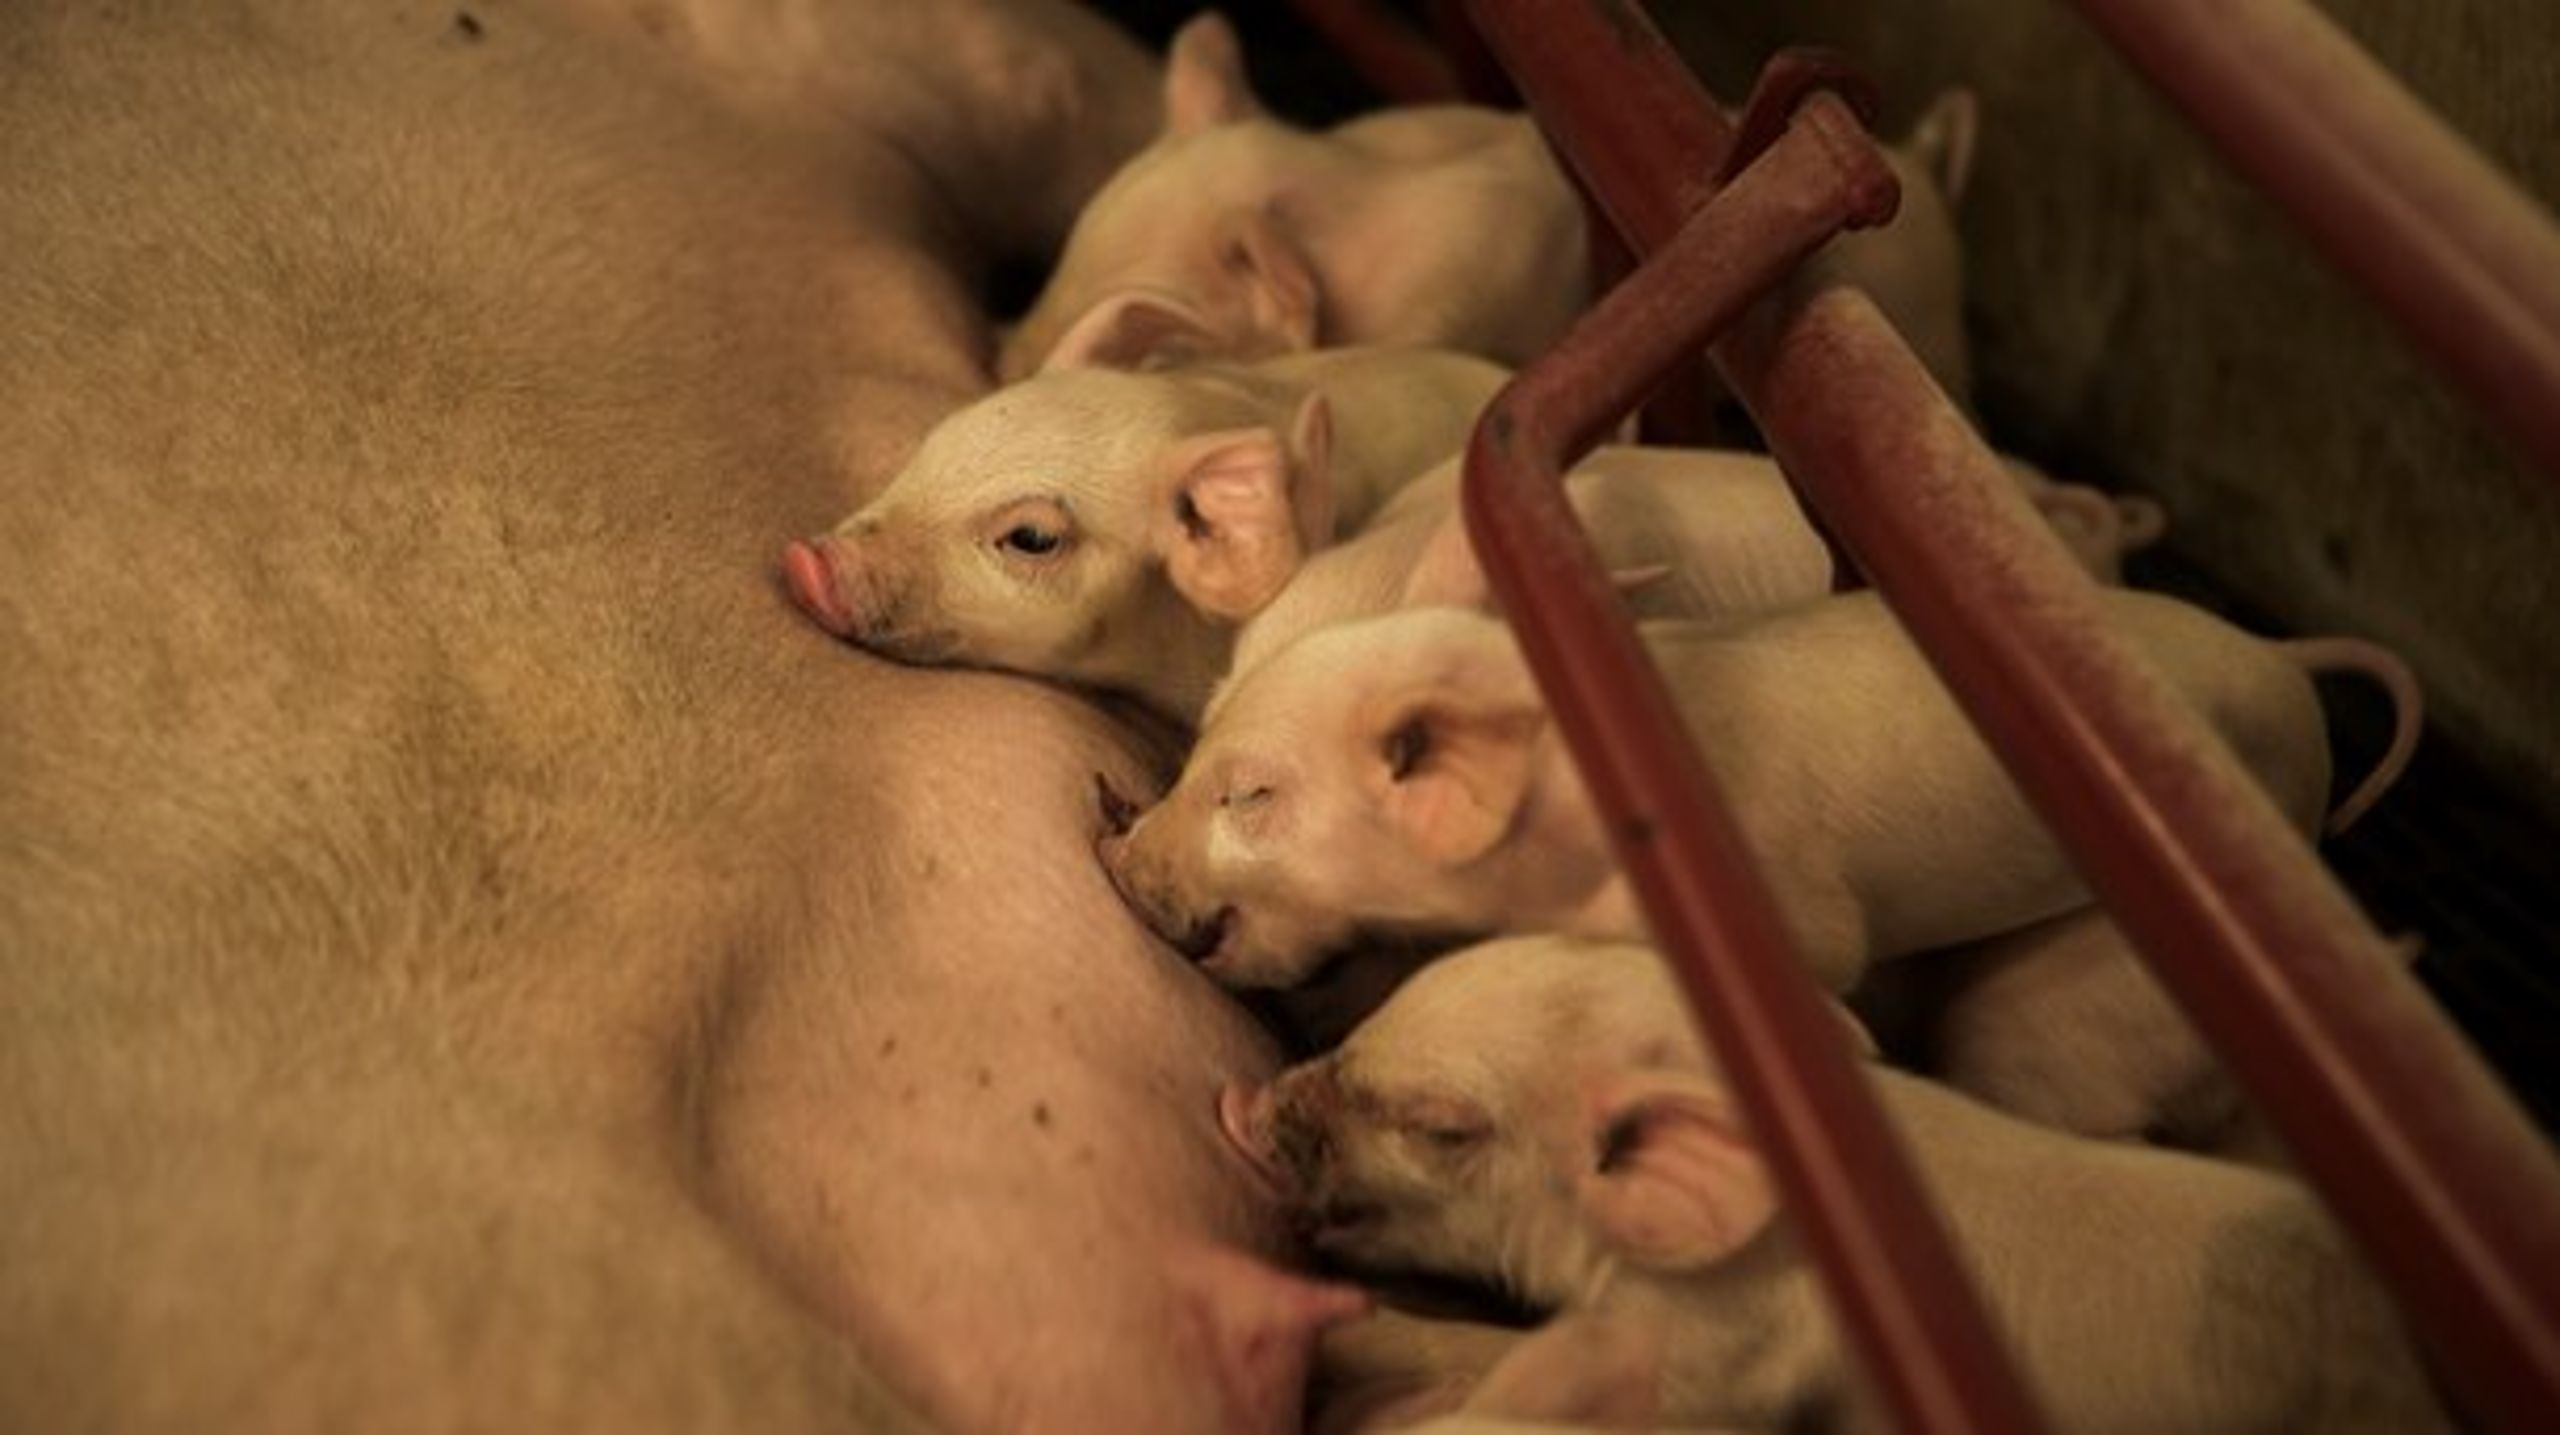 År efter år har dansk svineproduktion formået at reducere forbruget af antibiotika, skriver svinebonde Henrik Mortensen.